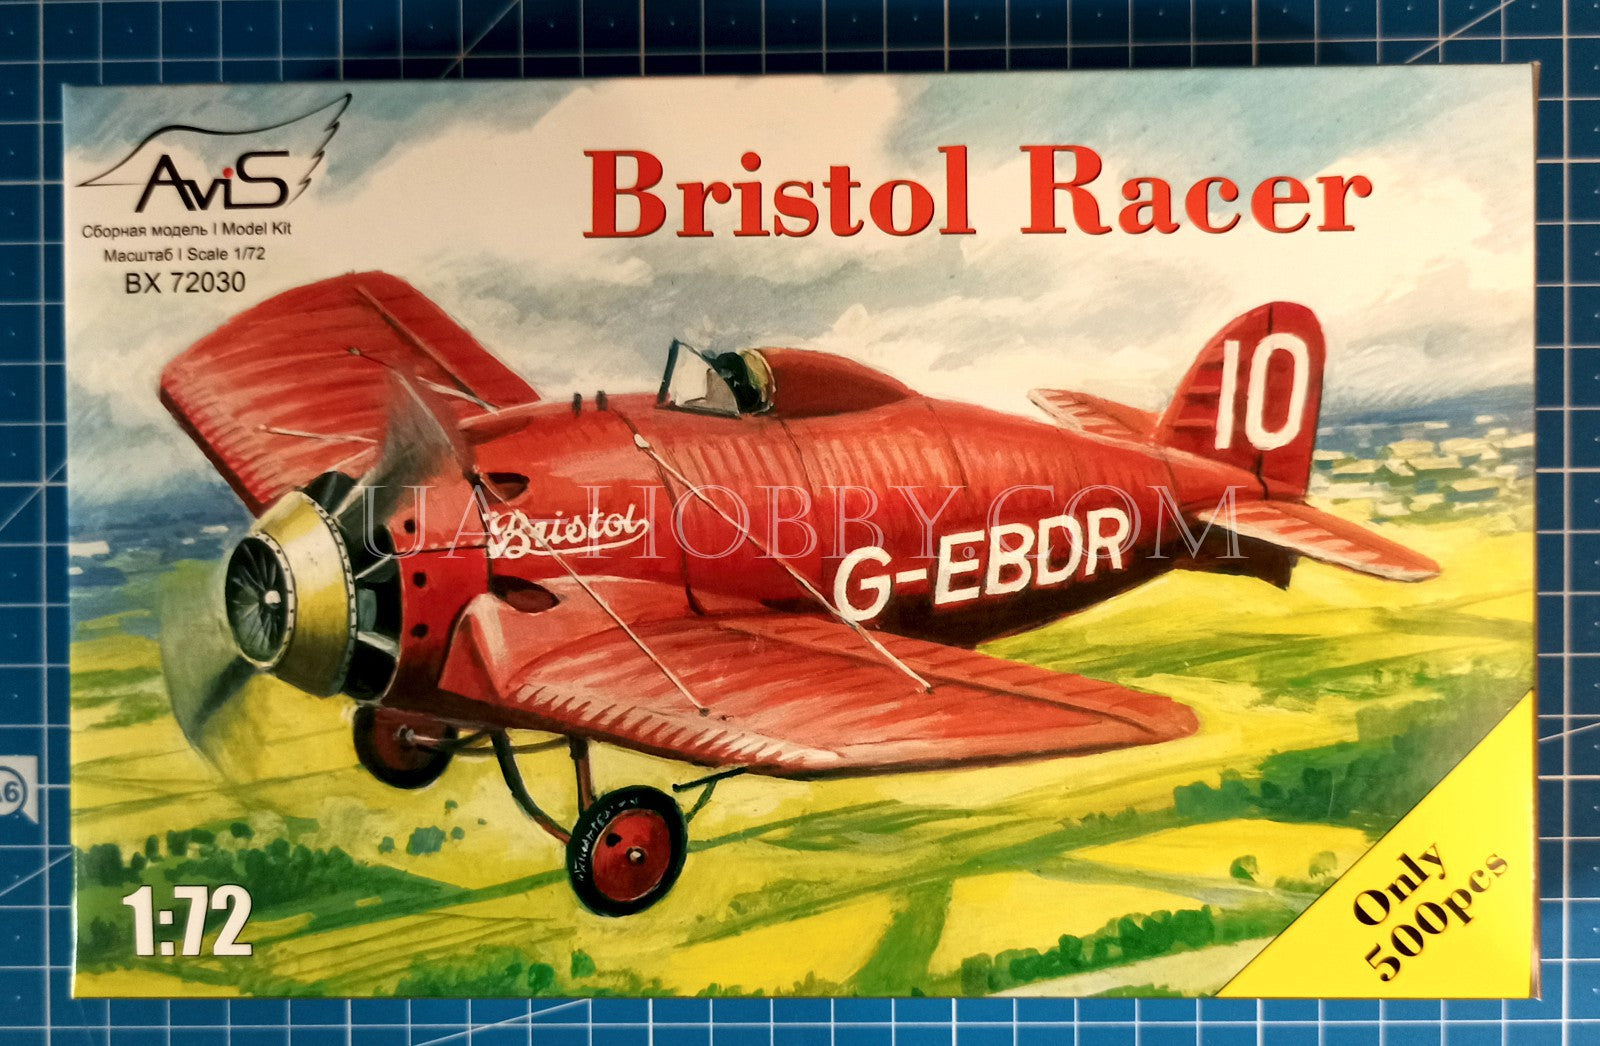 1/72 Bristol Racer. AviS BX 72030